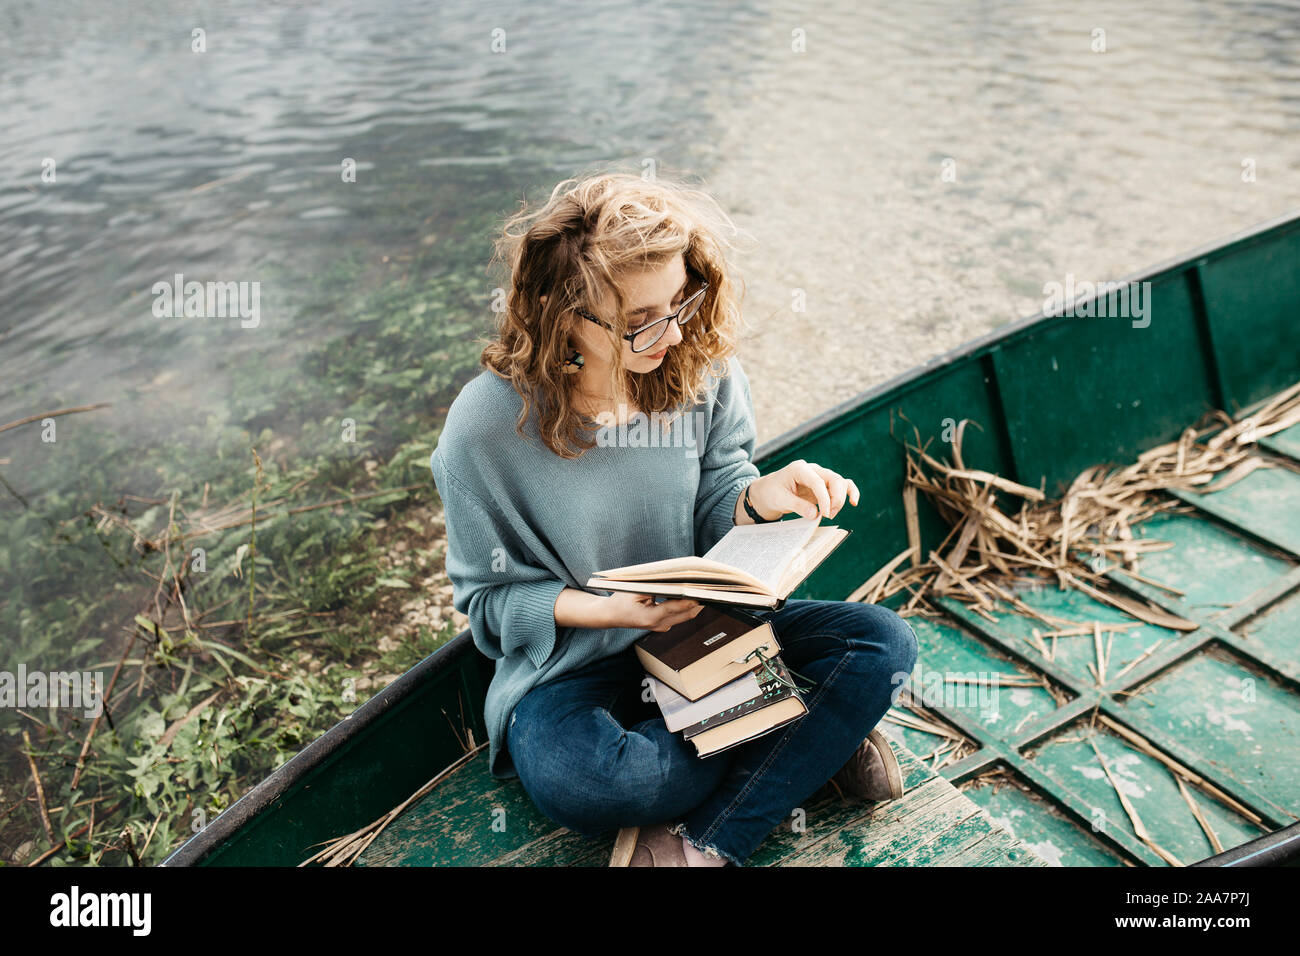 Portrait de la jeune belle femme assise sur un bateau et lecture d'un livre. Elle est bookworm et elle choisit entre quelques livres. Banque D'Images